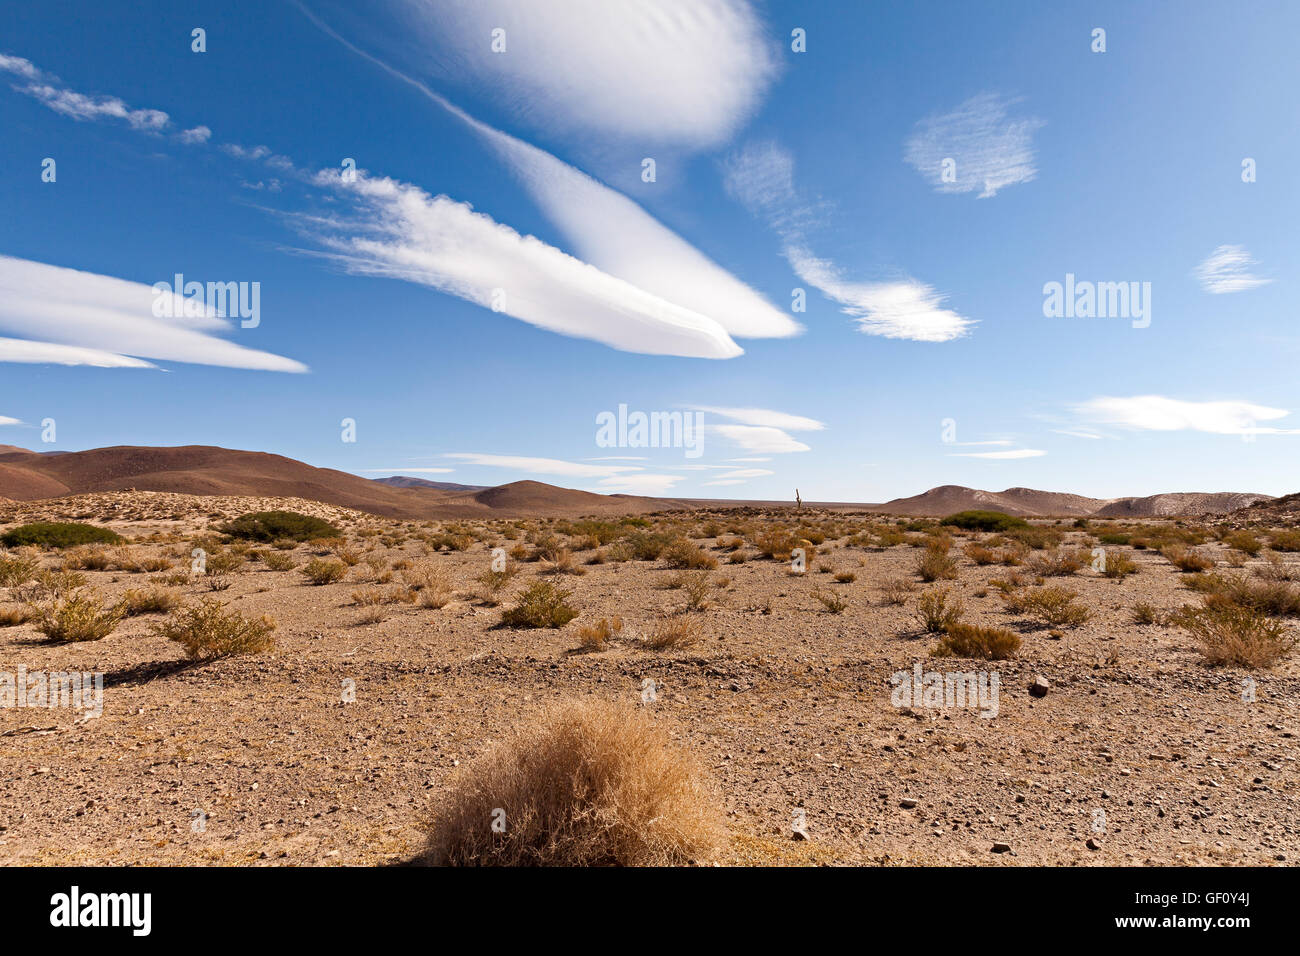 Panorama du désert dans les Andes, province de Jujuy, Argentine Banque D'Images